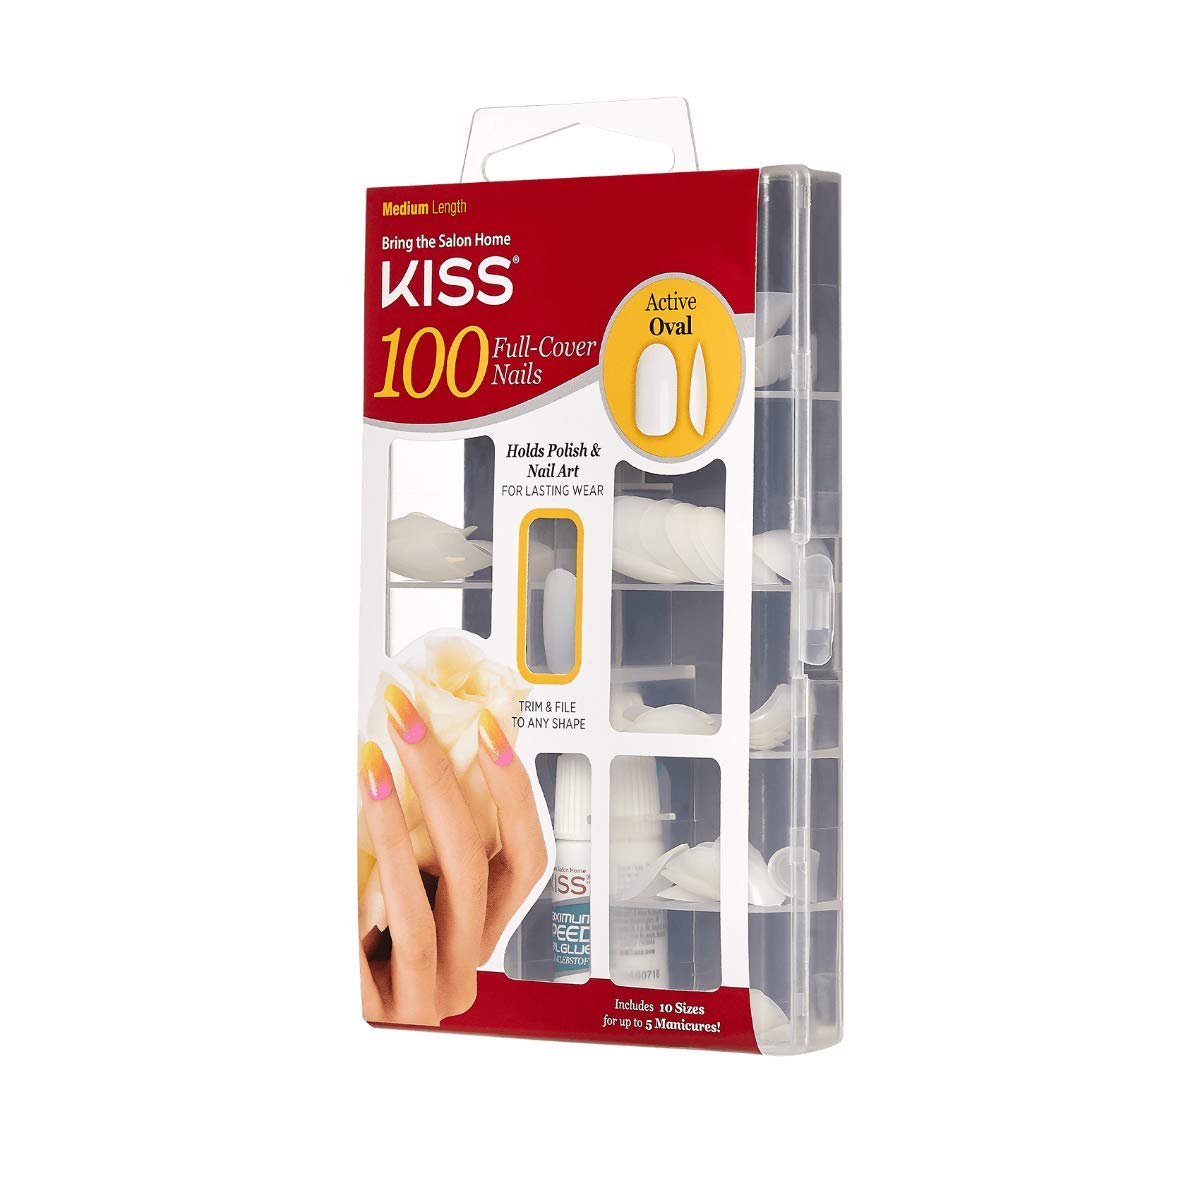 KISS100 Full Cover Nails Kit, Medium, 100 Nails